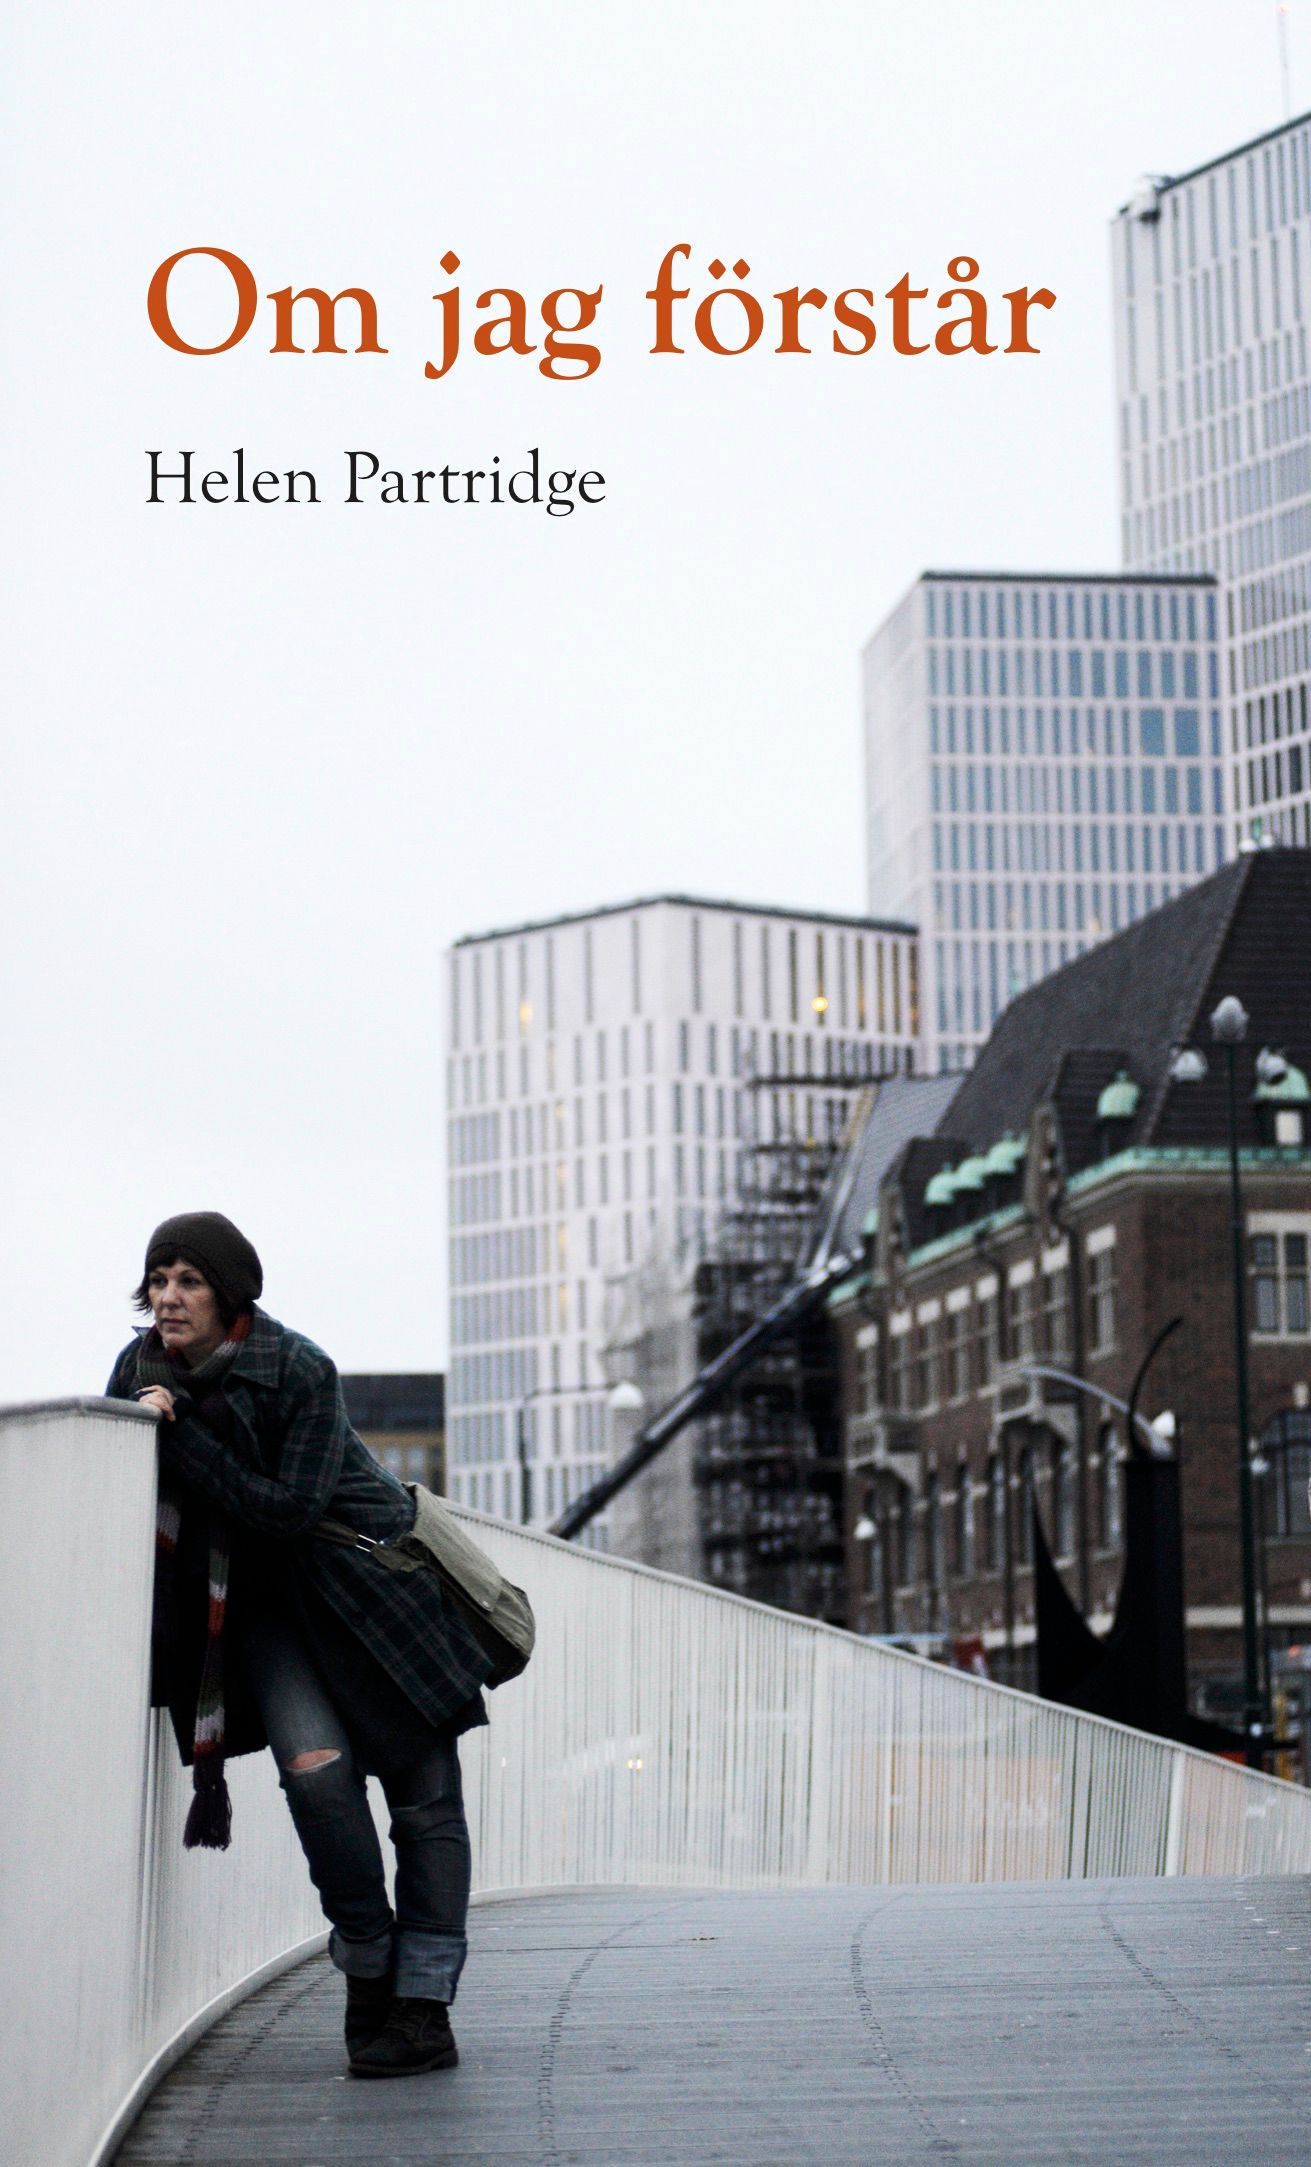 Om jag förstår, e-bog af Helen Partridge